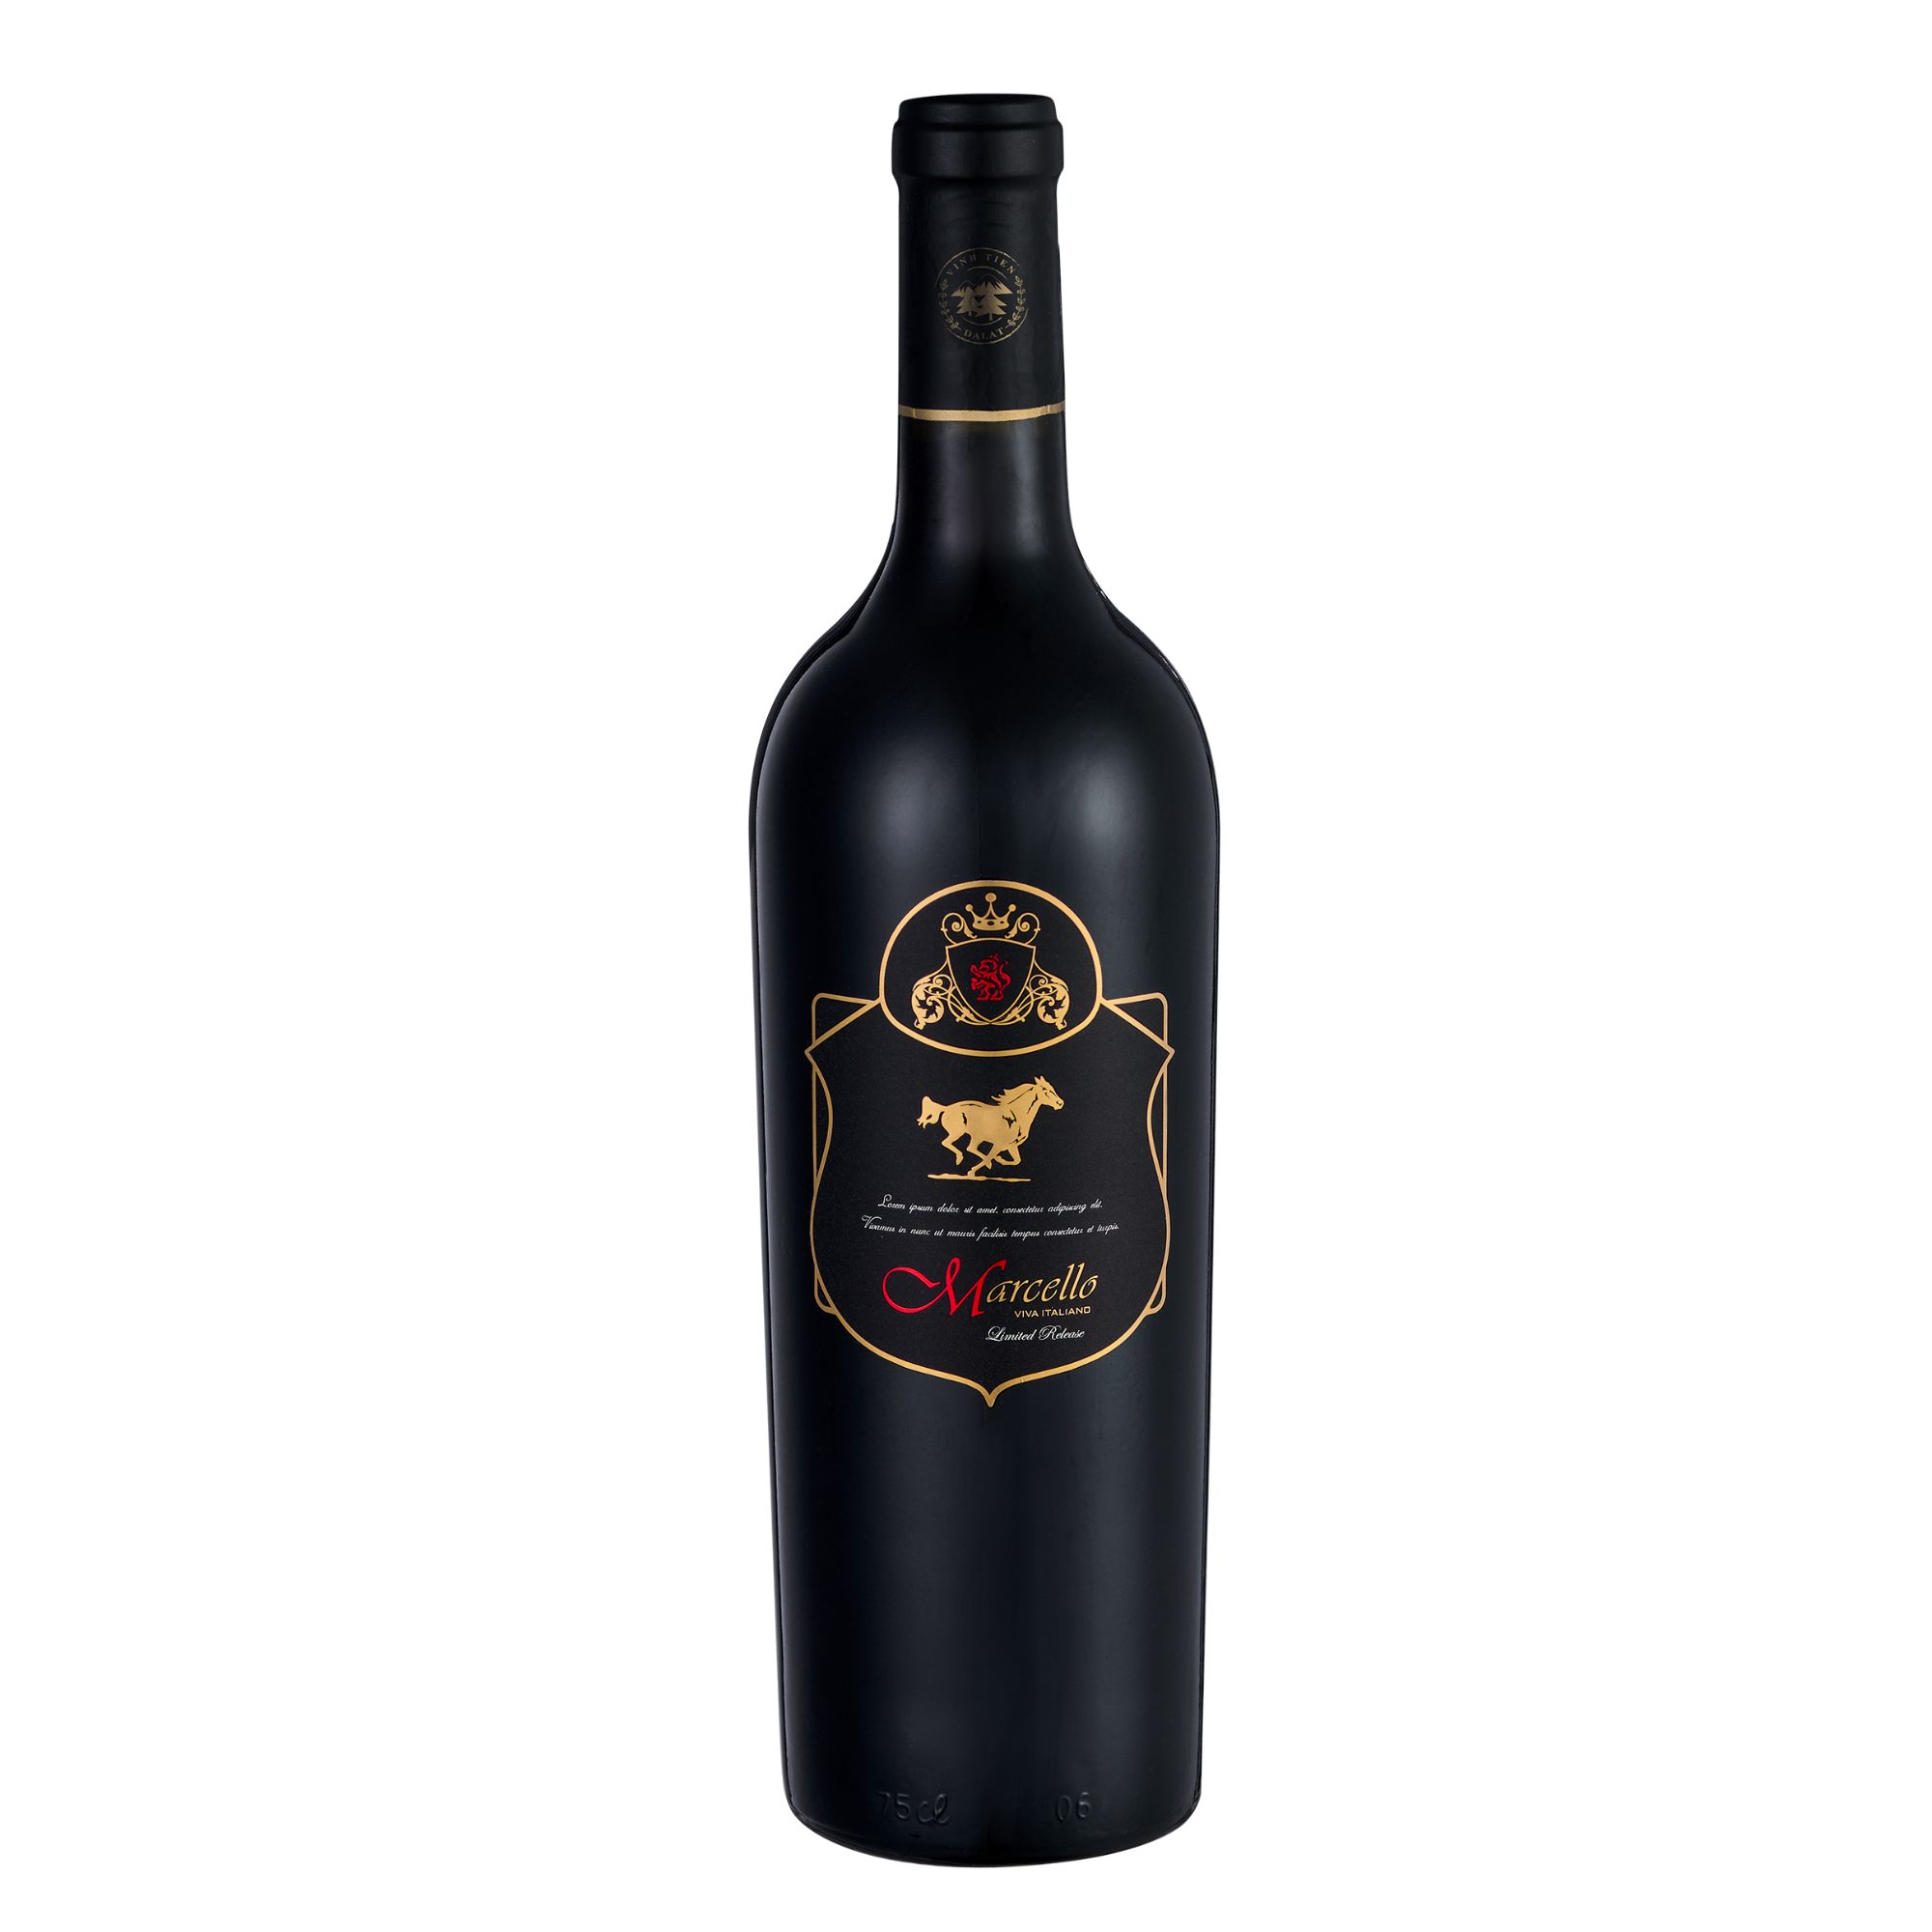 Rượu Vang Đỏ Marcello Limited Release Nhập Khẩu Ý 750ml, 13.5% vol.